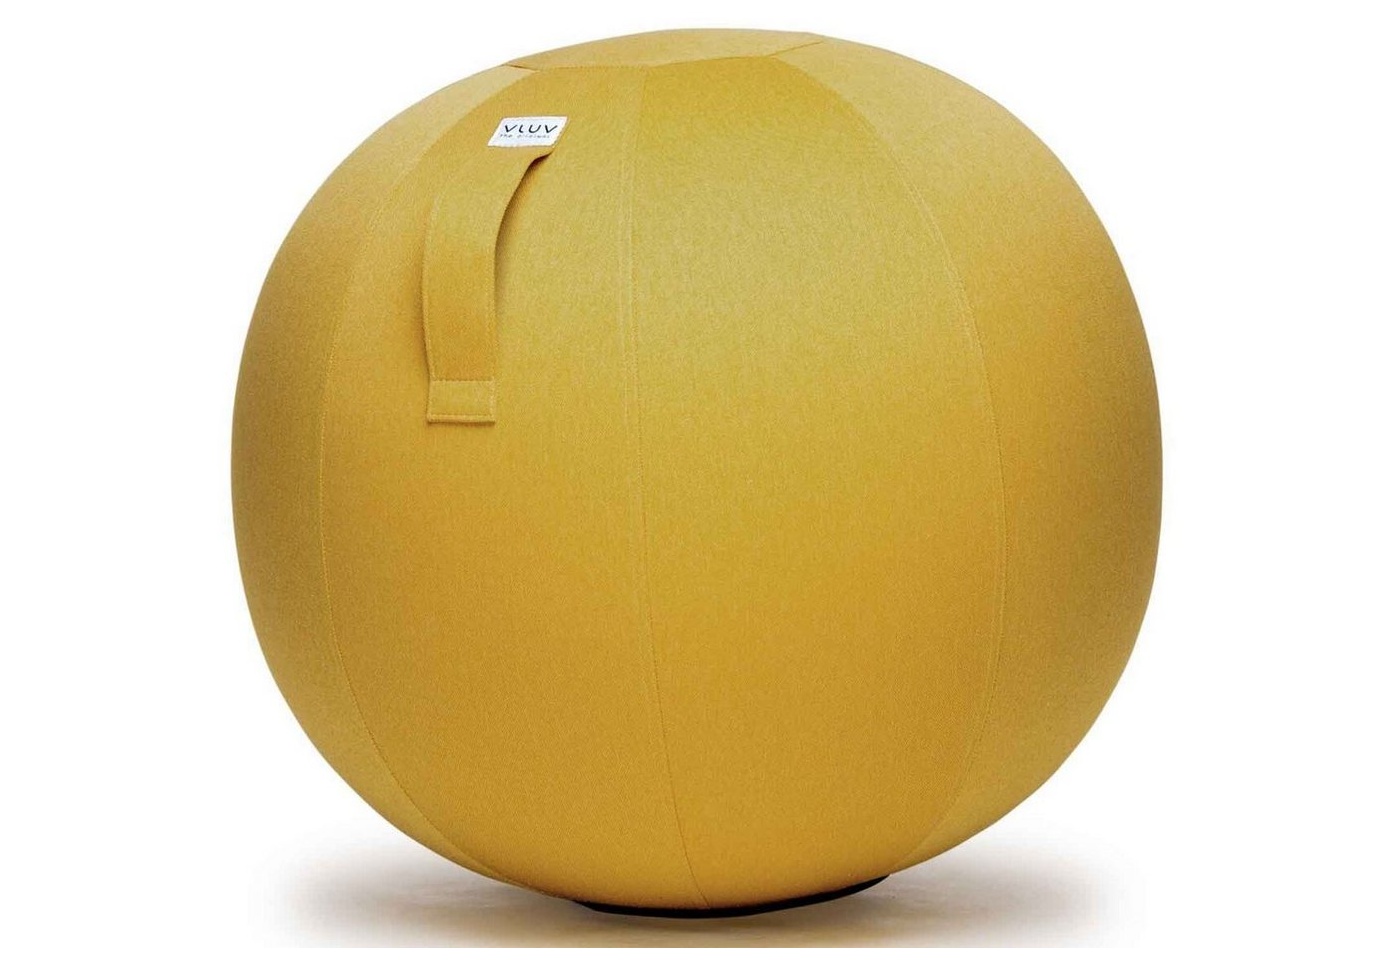 Bild Leiv Stoff-Sitzball Durchmesser 50-55 cm Mustard / Senfgelb gelb